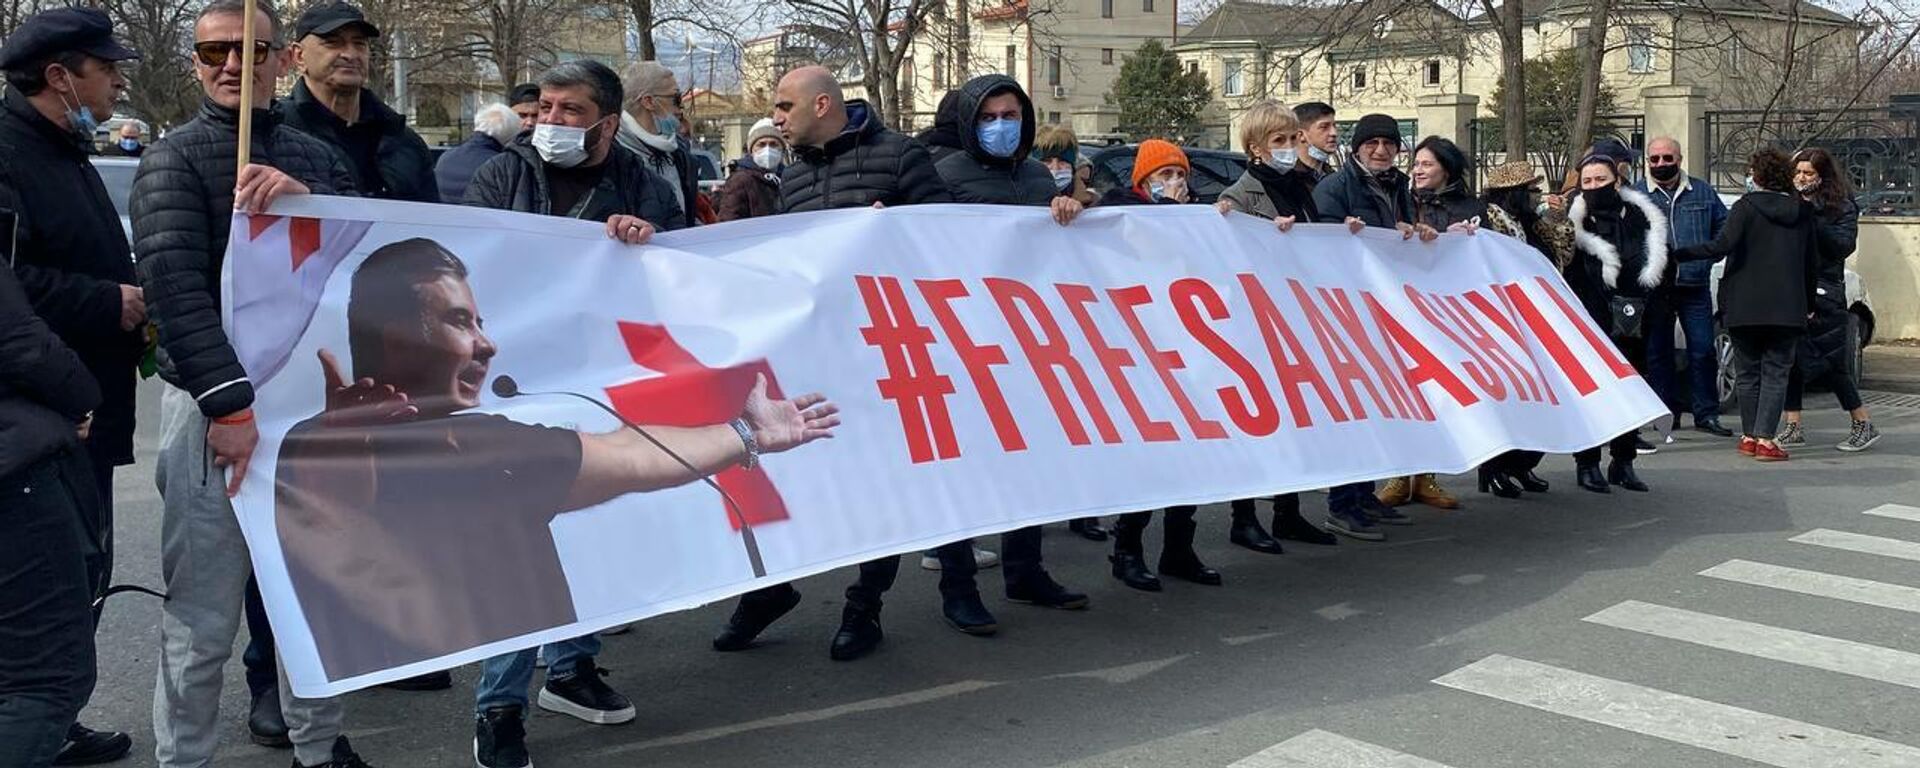 Акция протеста сторонников Саакашвили у здания тбилисского суда 21 февраля 2022 - Sputnik Грузия, 1920, 03.08.2022